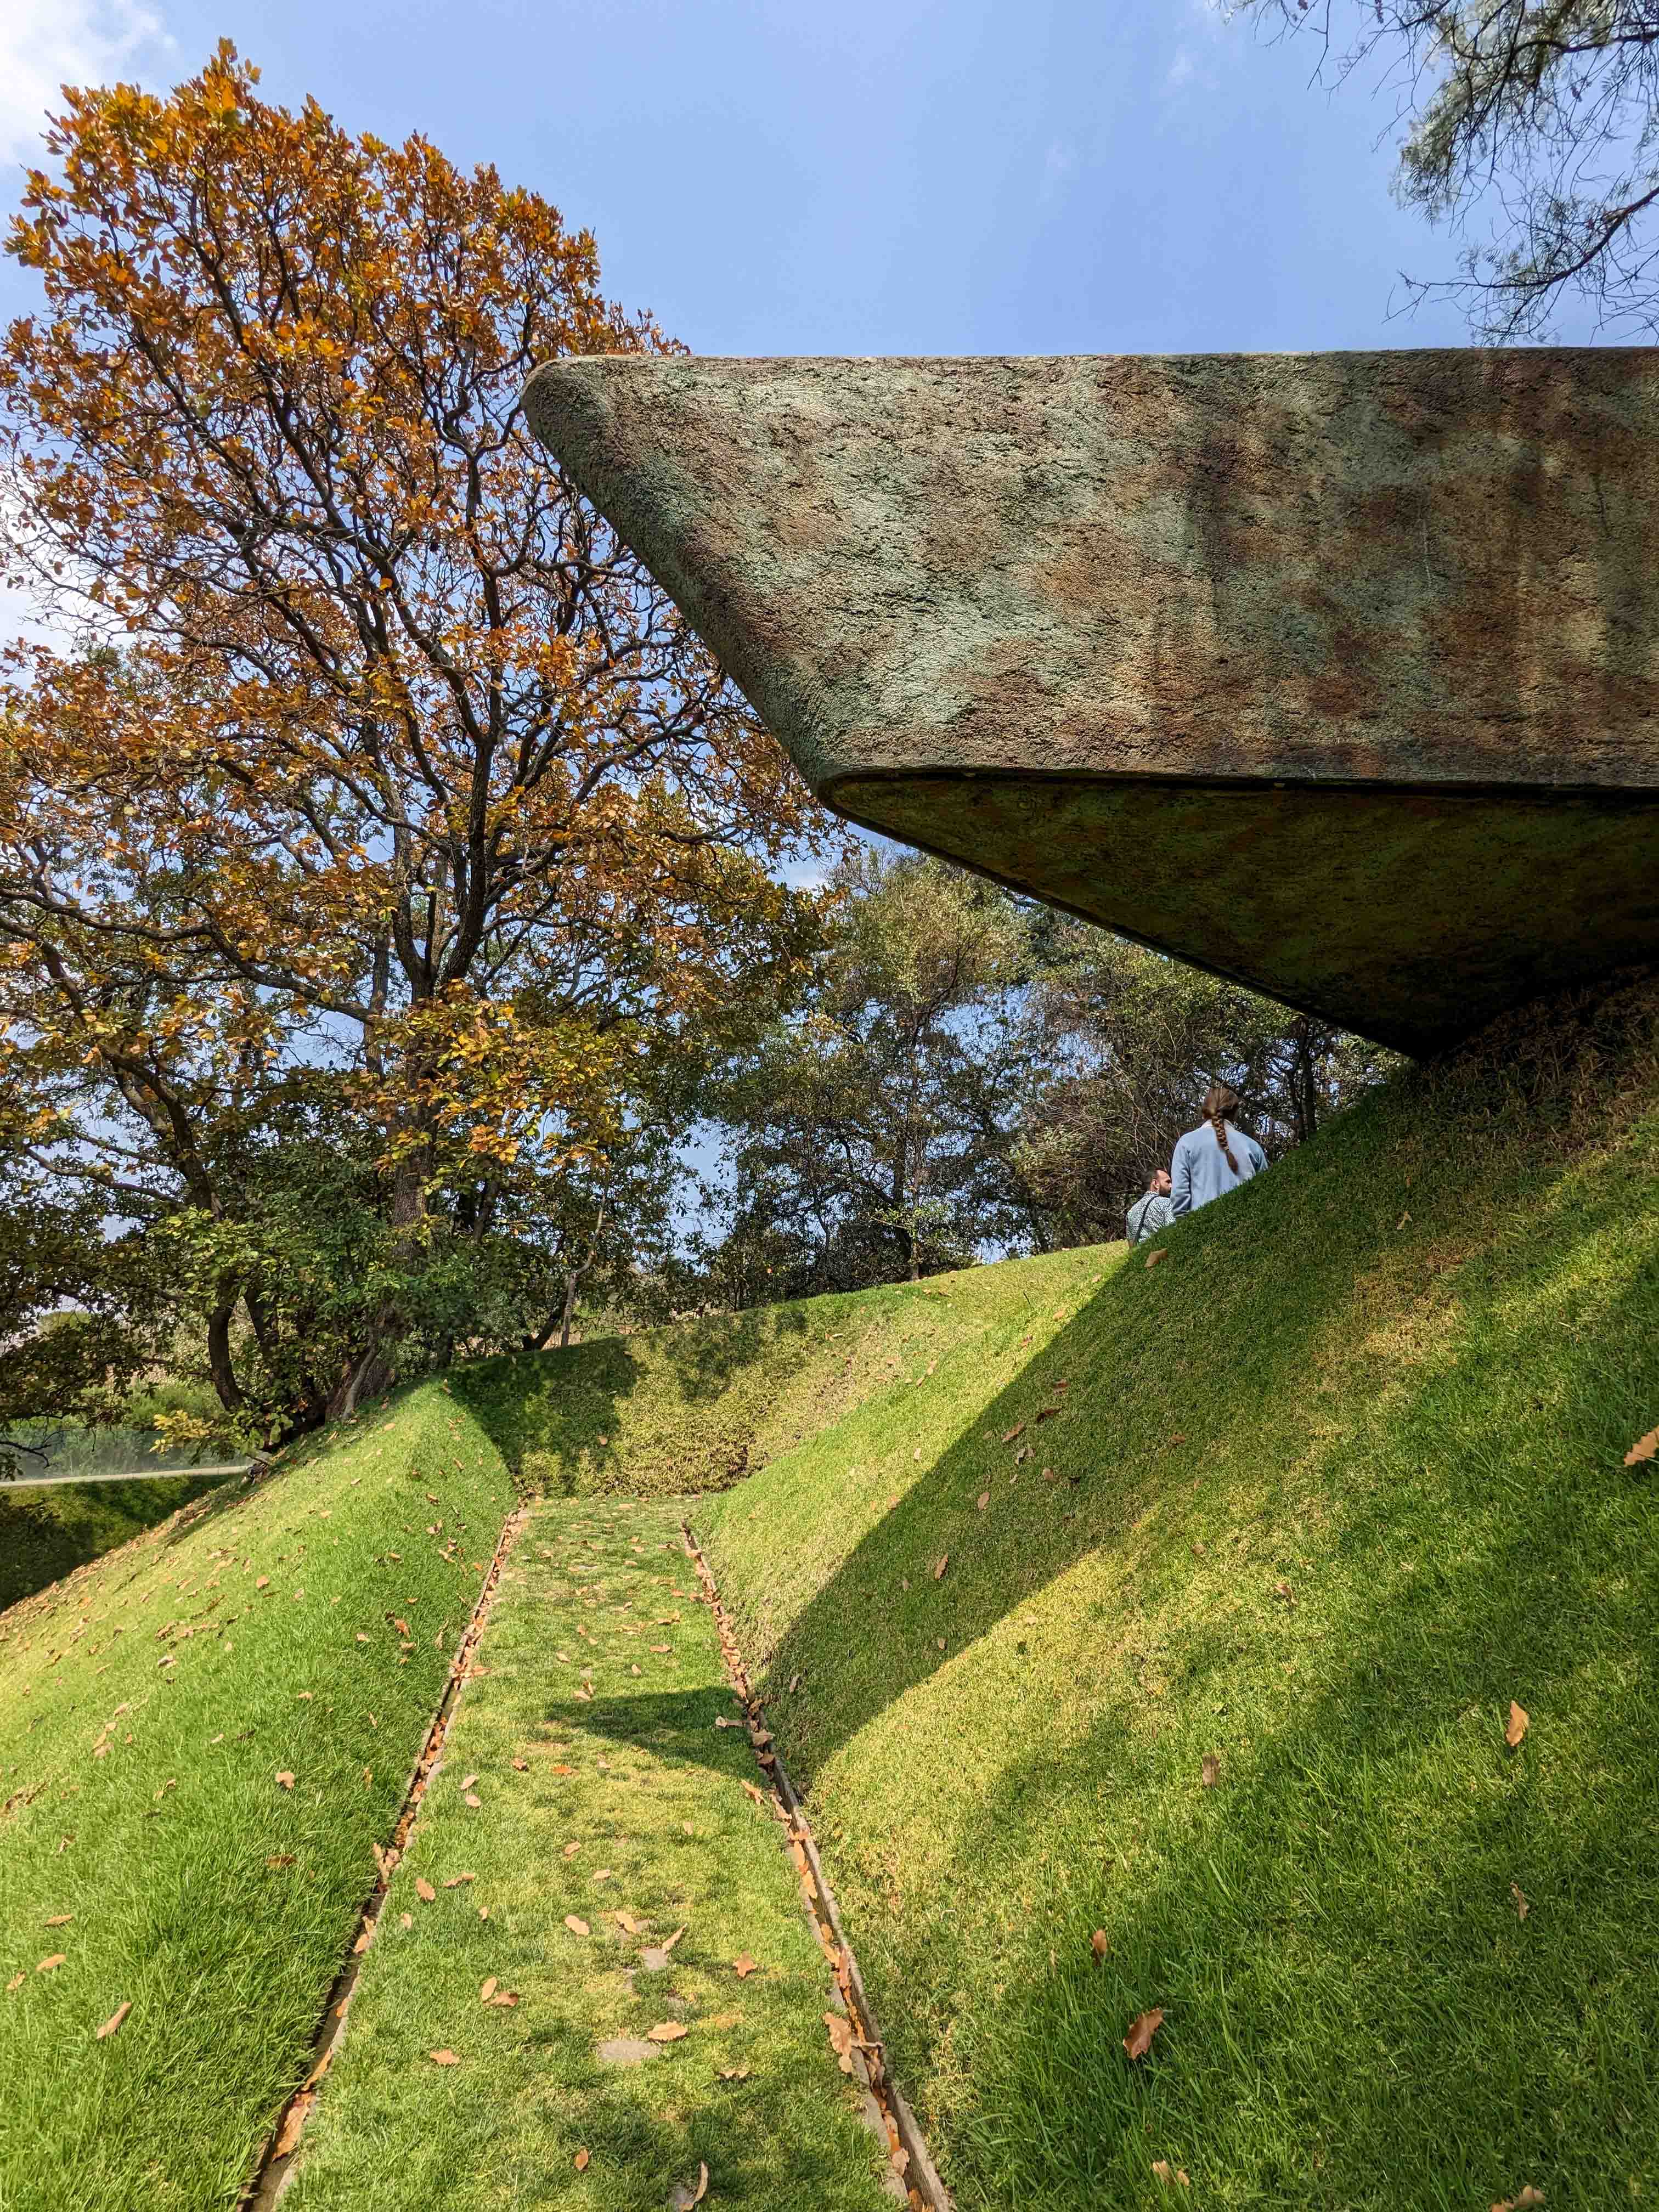 Landscape architecture at Parque Quetzalcoatl